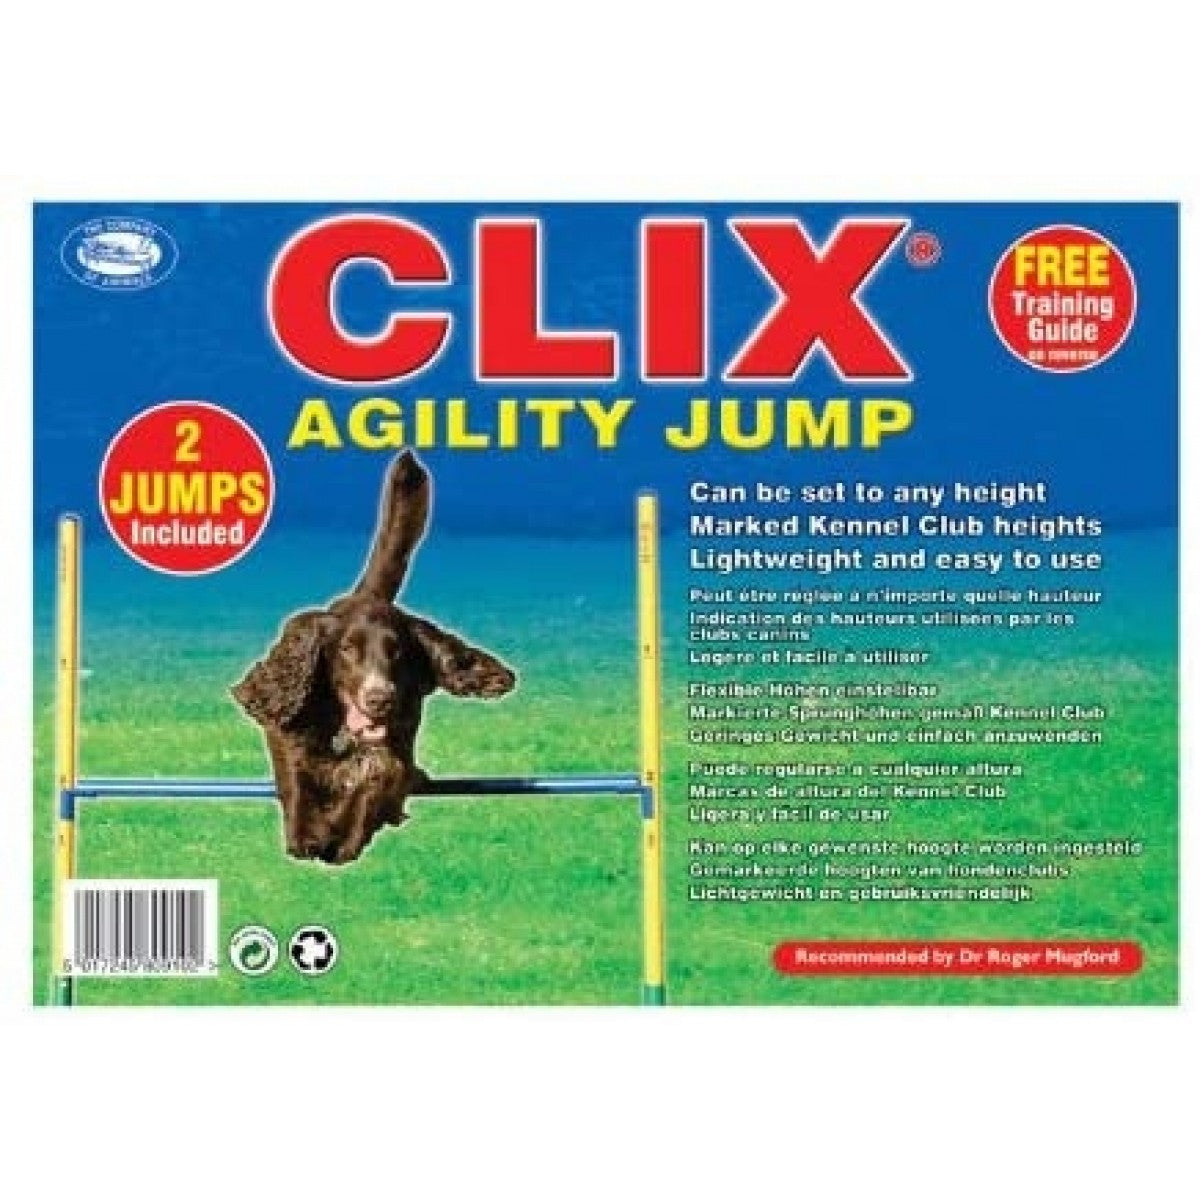 Clix Agility Jump